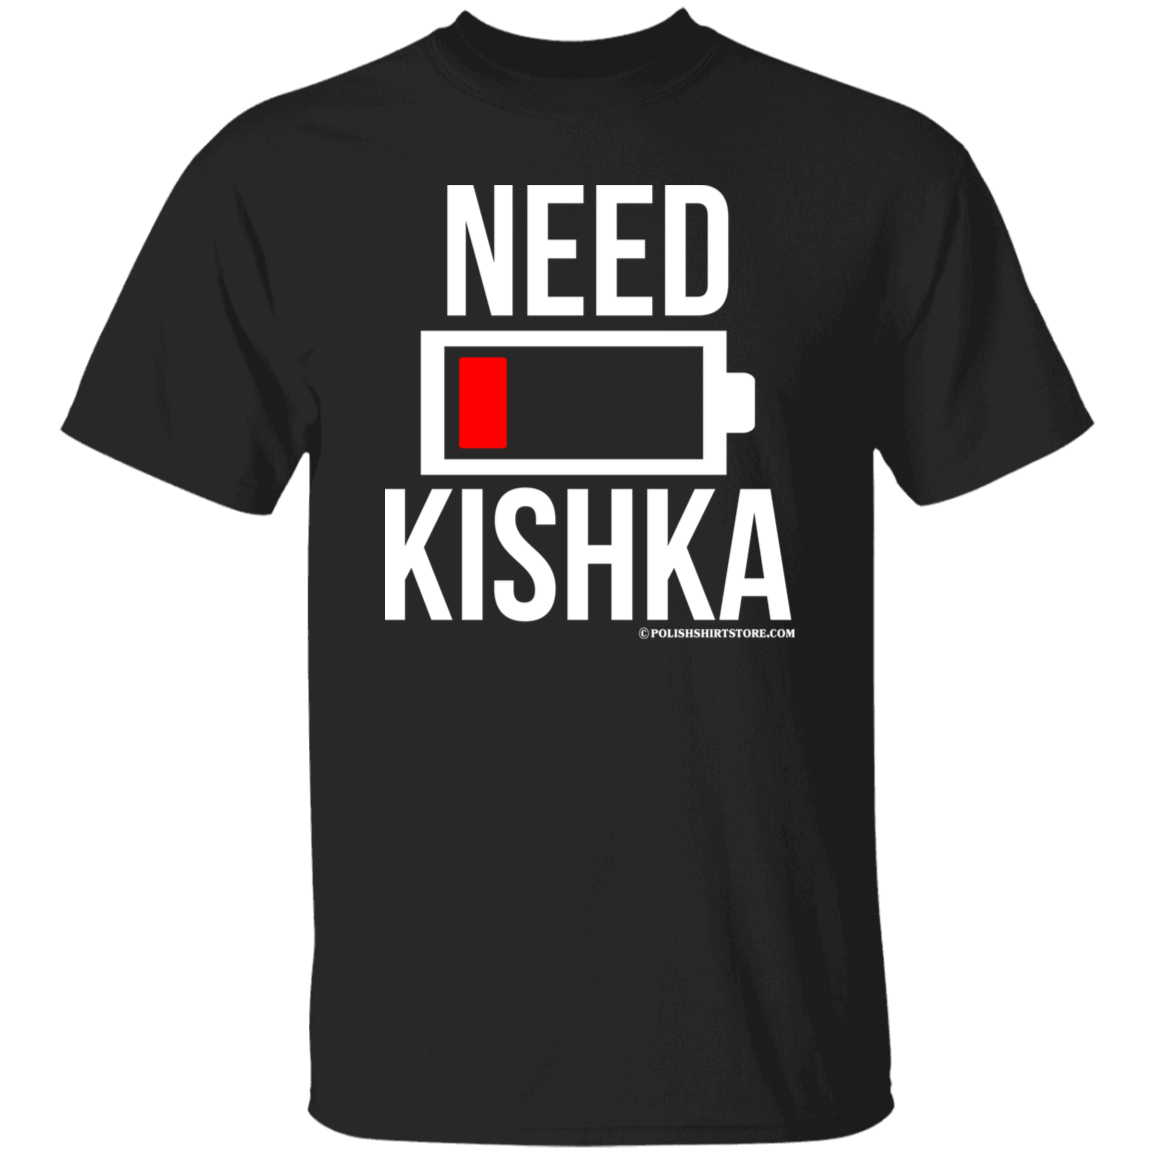 Need Kishka Battery Low Apparel CustomCat G500 5.3 oz. T-Shirt Black S